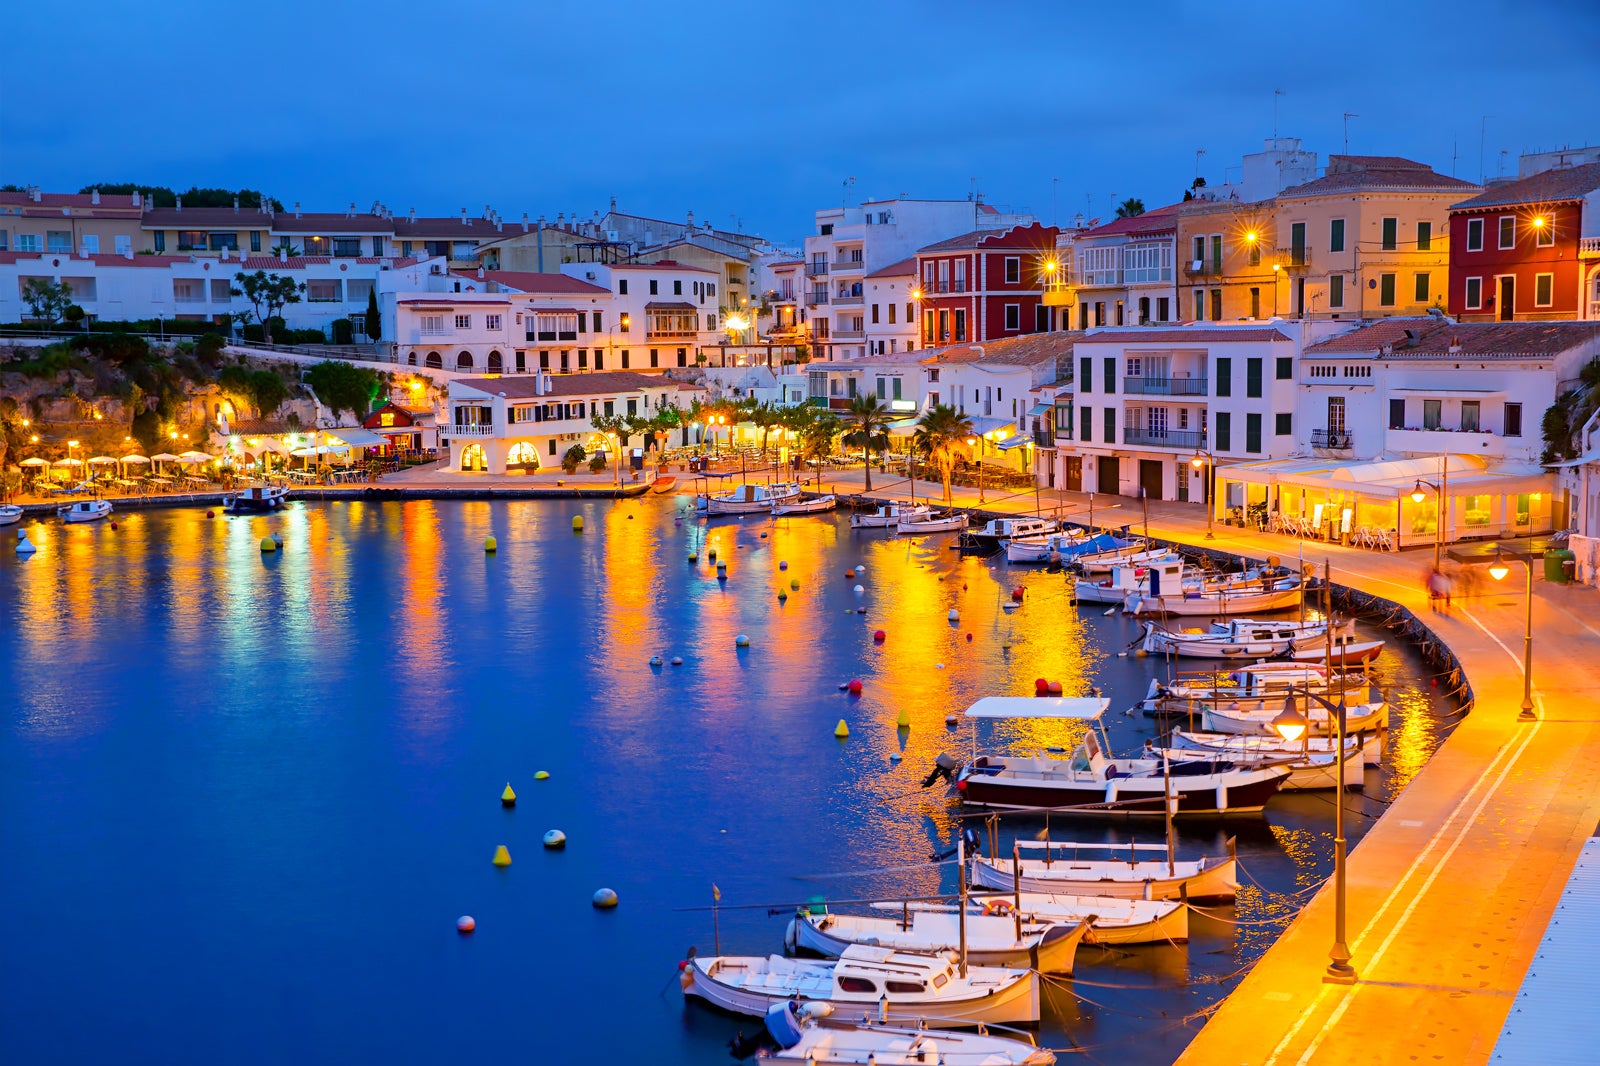 ¡Menorca! 5 días y 4 noches en Hotel 4* en TODO INCLUIDO + Barco ida y vuelta desde Barcelona + coche!